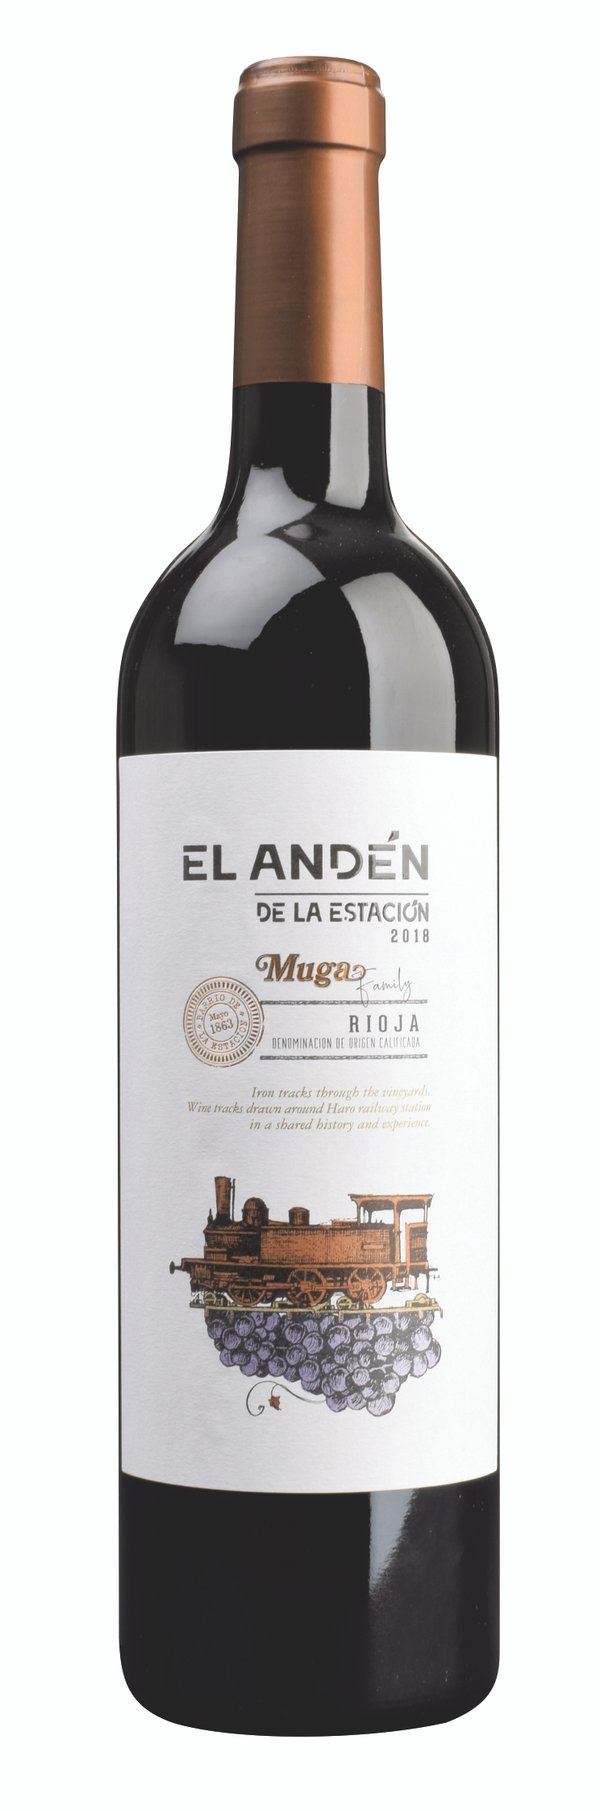 Rioja "EL ANDÉN" de la Estación 2019 Bodegas Muga 